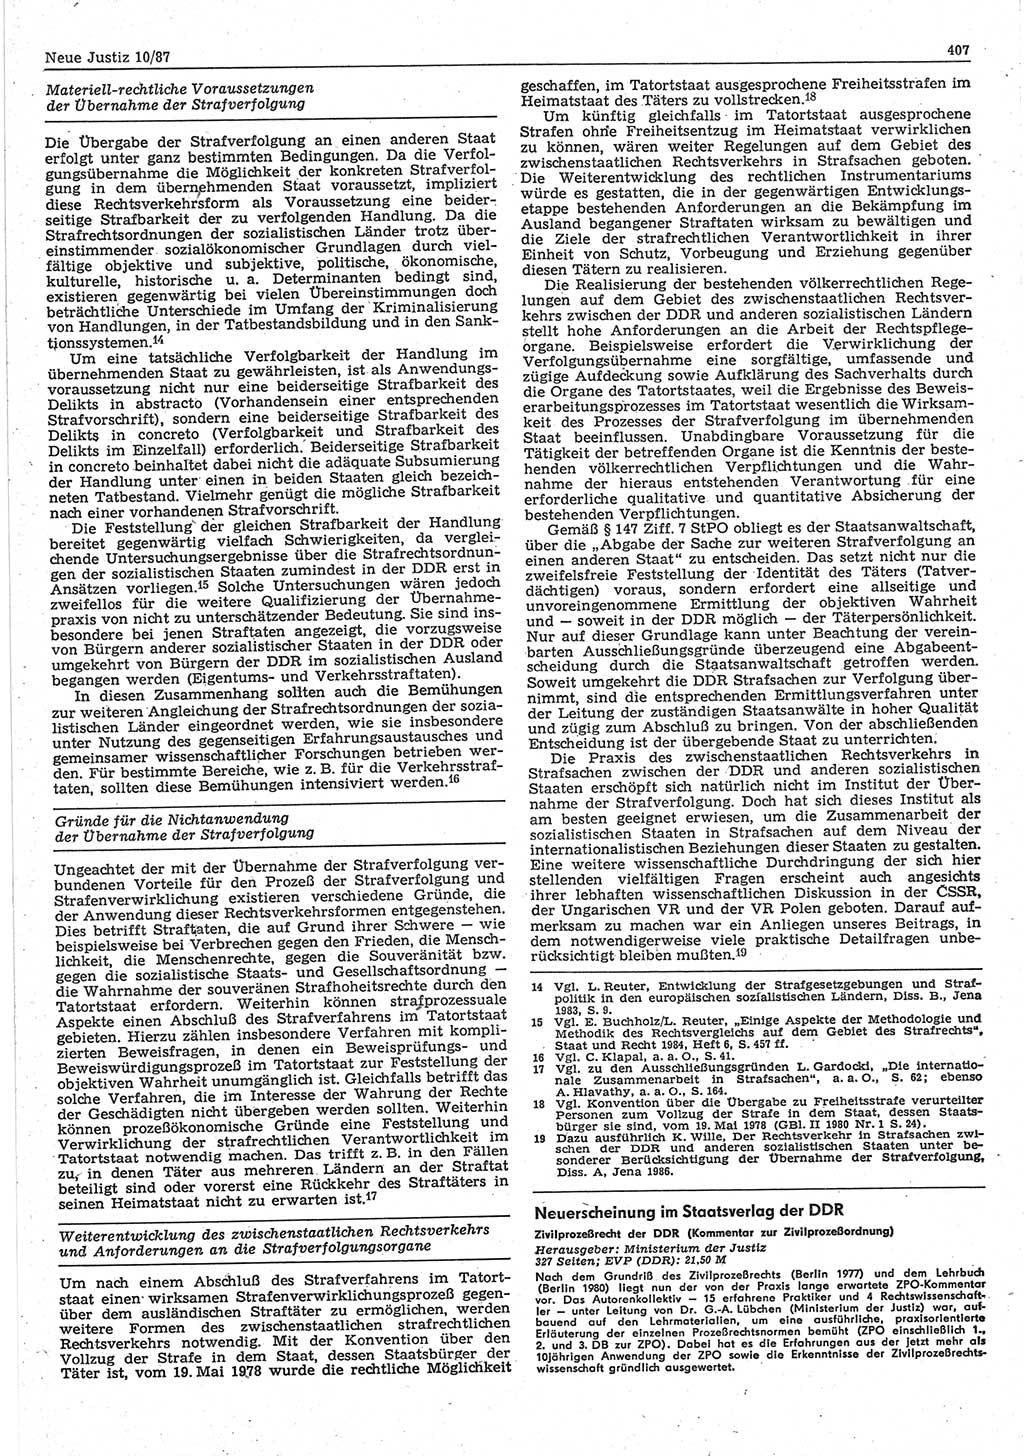 Neue Justiz (NJ), Zeitschrift für sozialistisches Recht und Gesetzlichkeit [Deutsche Demokratische Republik (DDR)], 41. Jahrgang 1987, Seite 407 (NJ DDR 1987, S. 407)